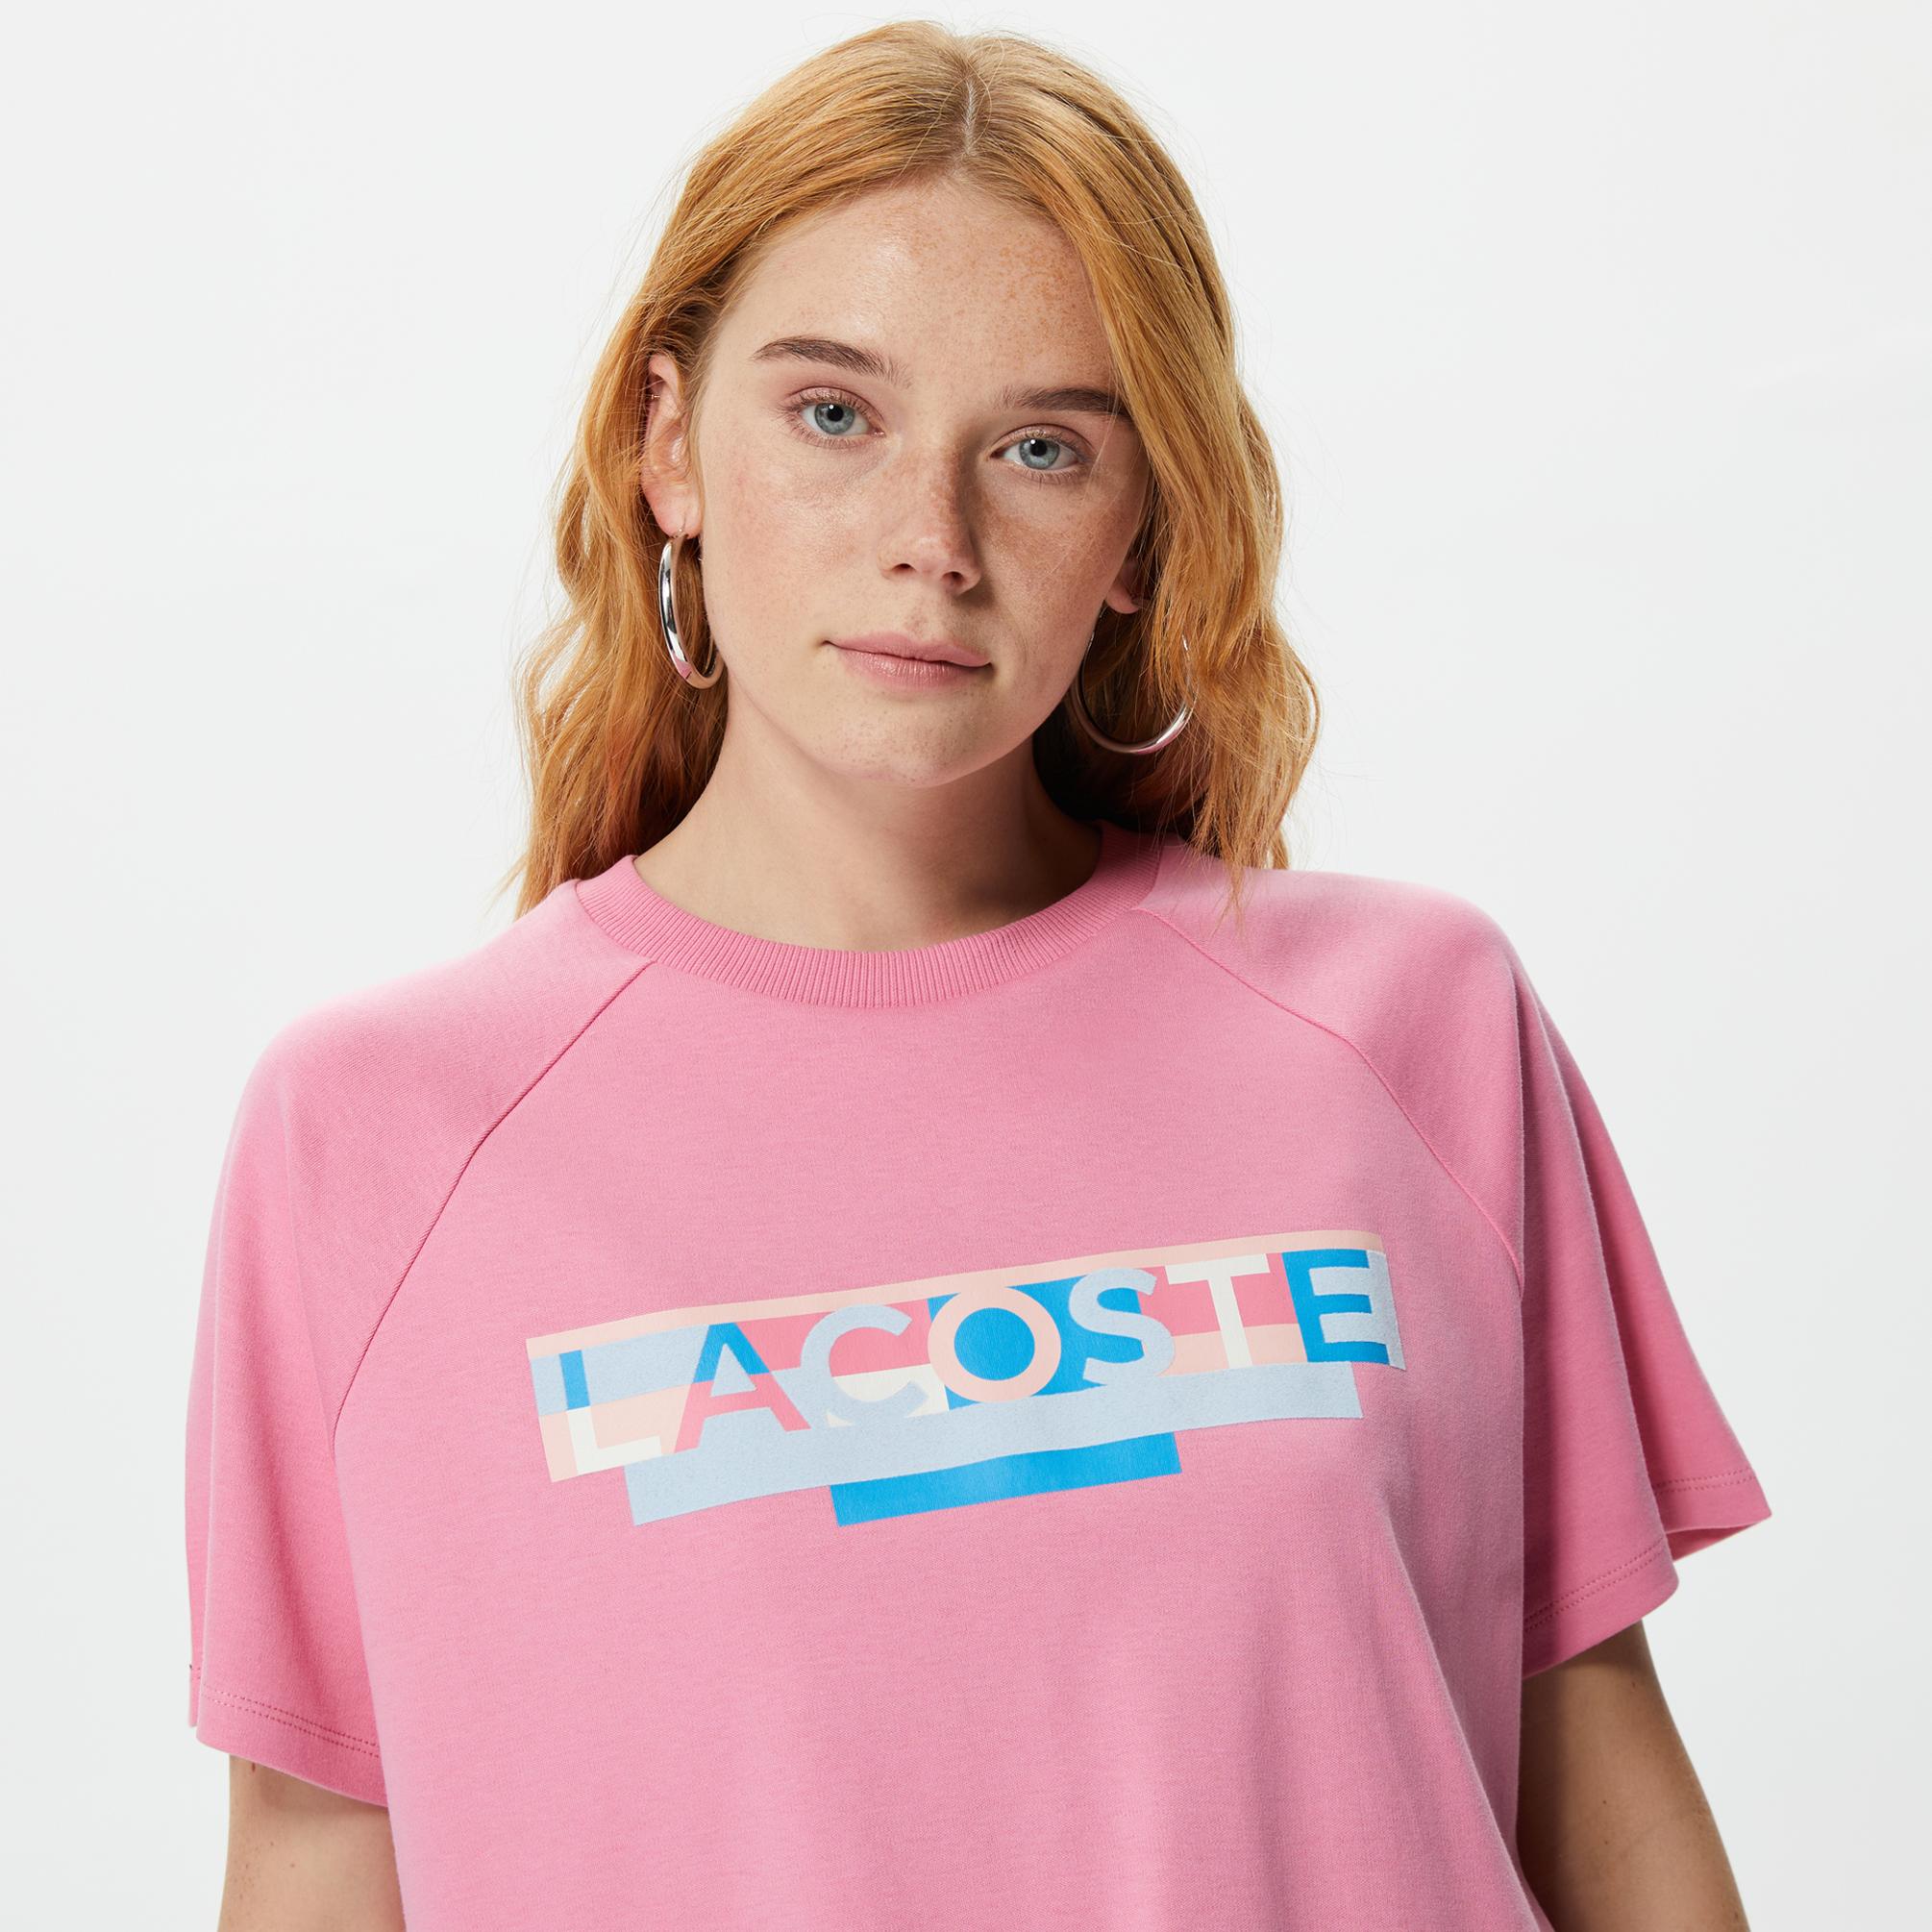  Lacoste Loose Fit Kadın Pembe T-Shirt